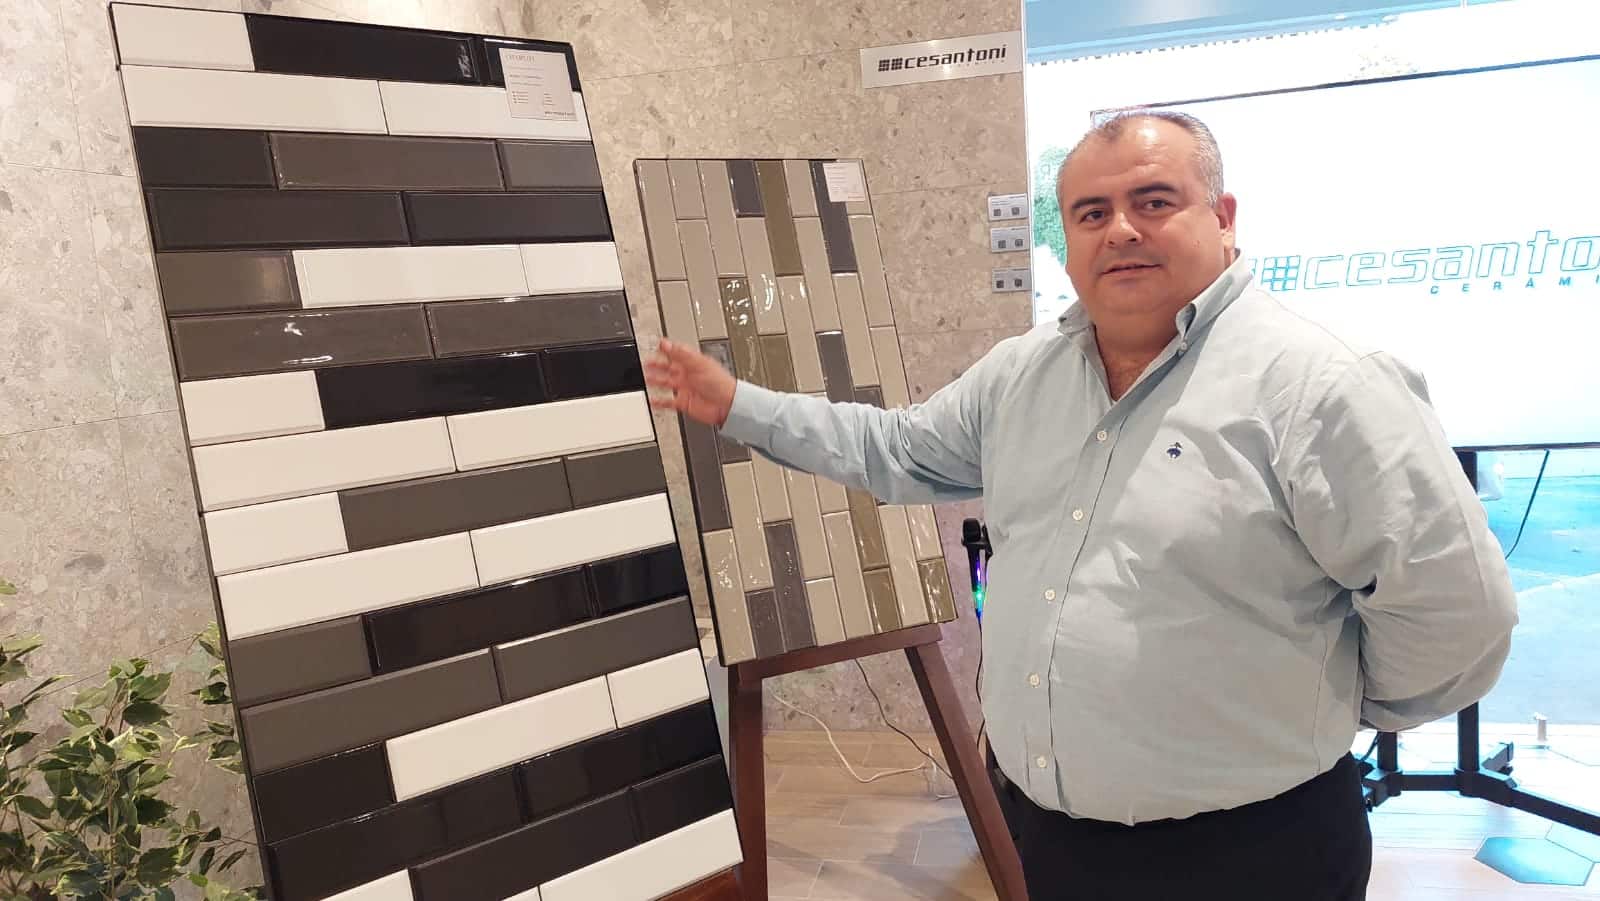 ¿Planeas construir? Cesantoni presenta sus nuevos productos en pisos en Culiacán ¡Aprovecha!